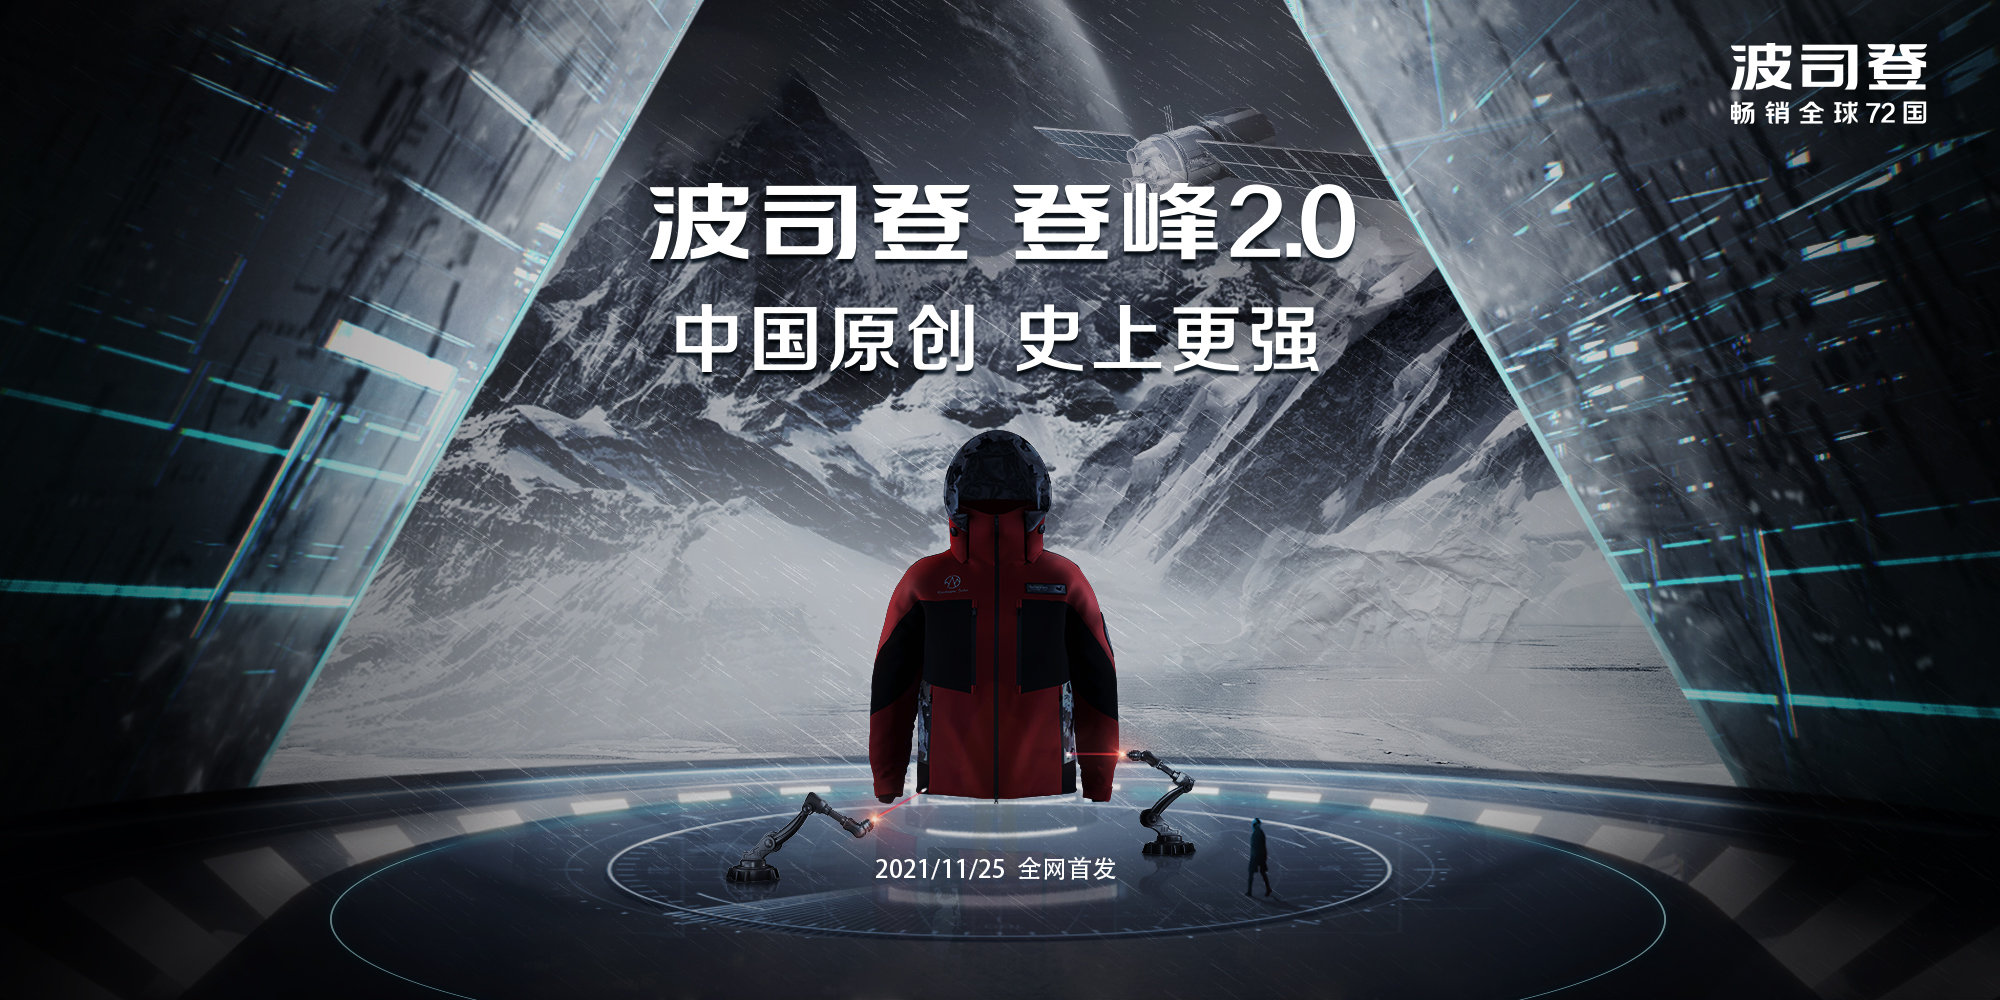 波司登发布中国原创「登峰 2.0 系列」